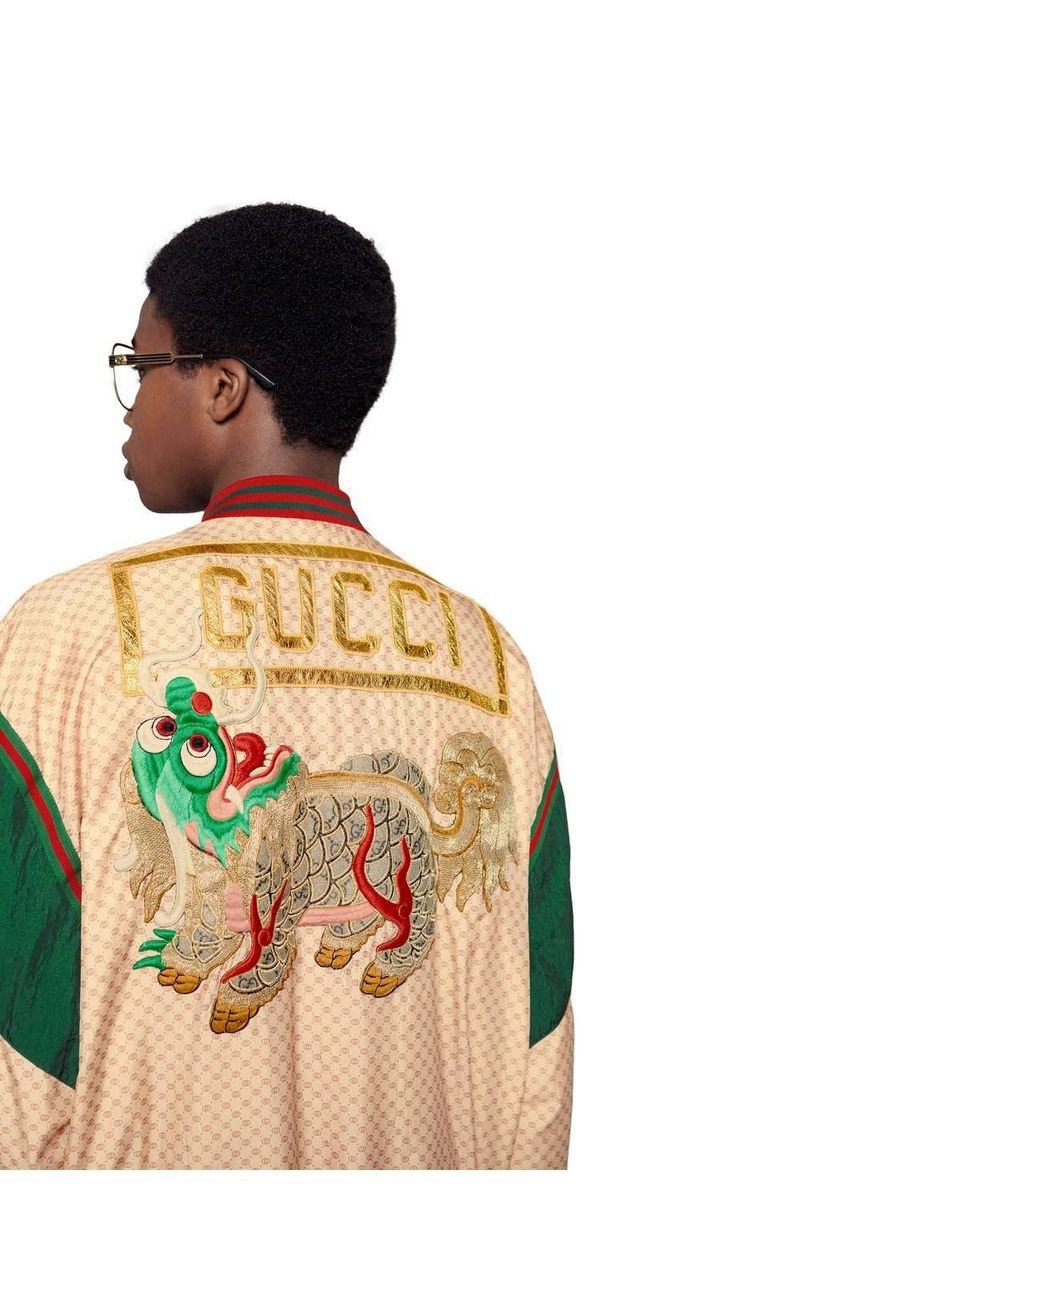 Dapper Dan Designed A Custom Gucci Atlanta Jacket For A3C